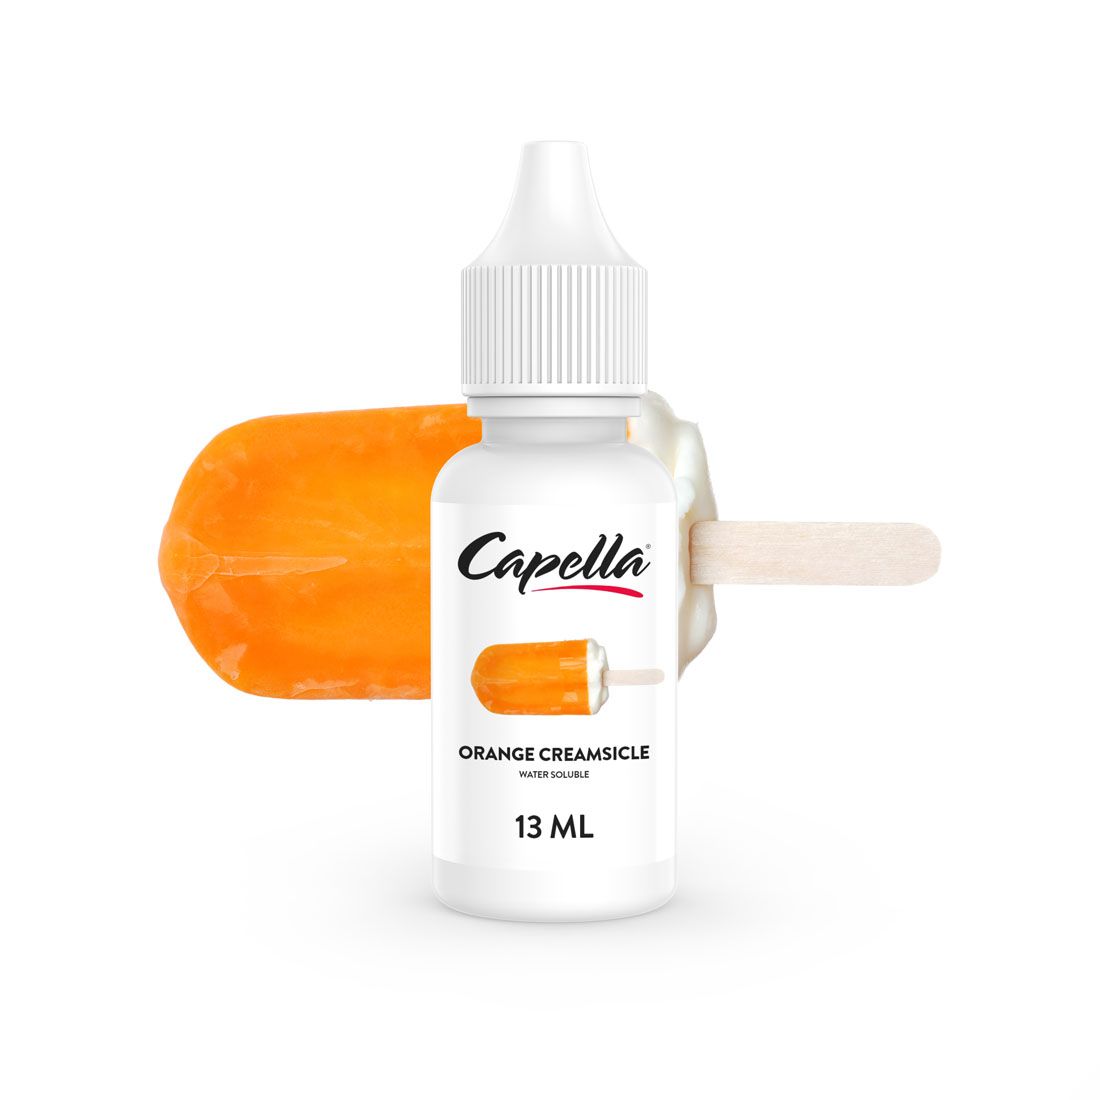 Capella Orange Creamsicle